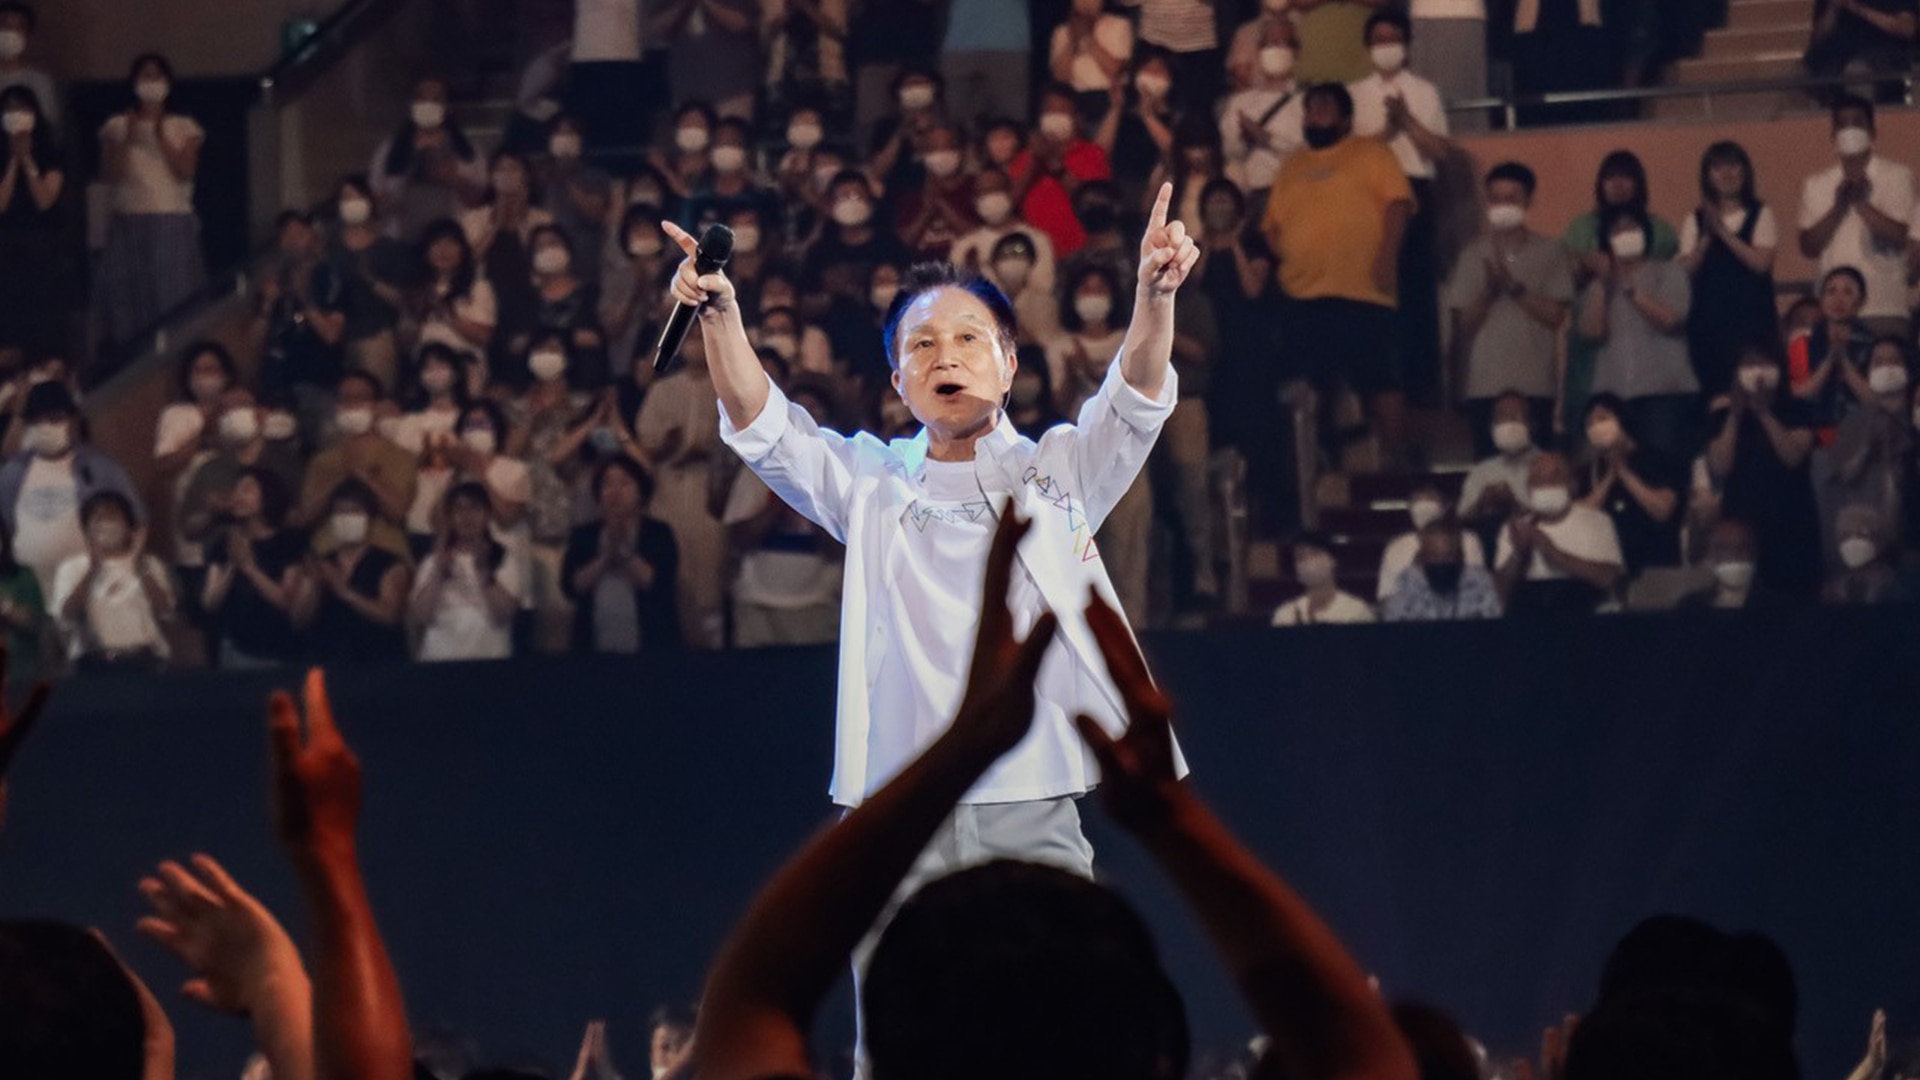 こんどこそ、君と!! 〜小田和正ライブ&ドキュメント2022-2023〜 - NHK